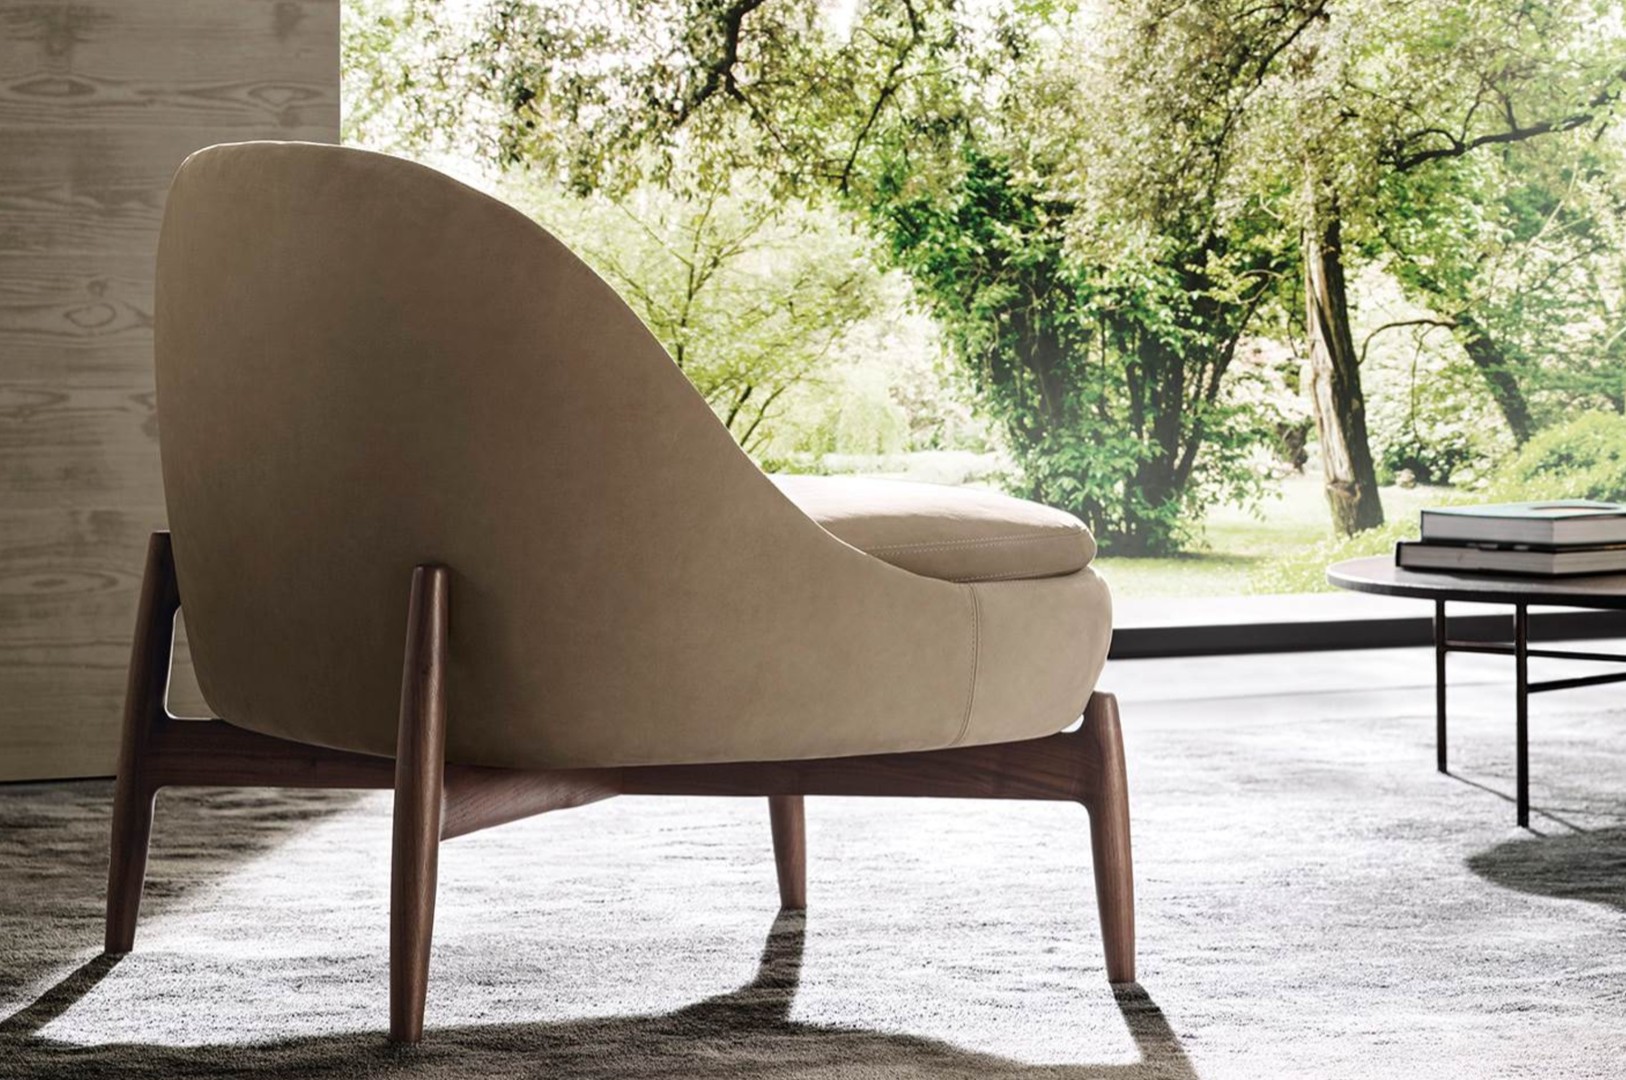 HORA Barneveld Minotti Sendai bank modulaire sofa design meubelen designmeubelen fauteuil armchair 01.jpg